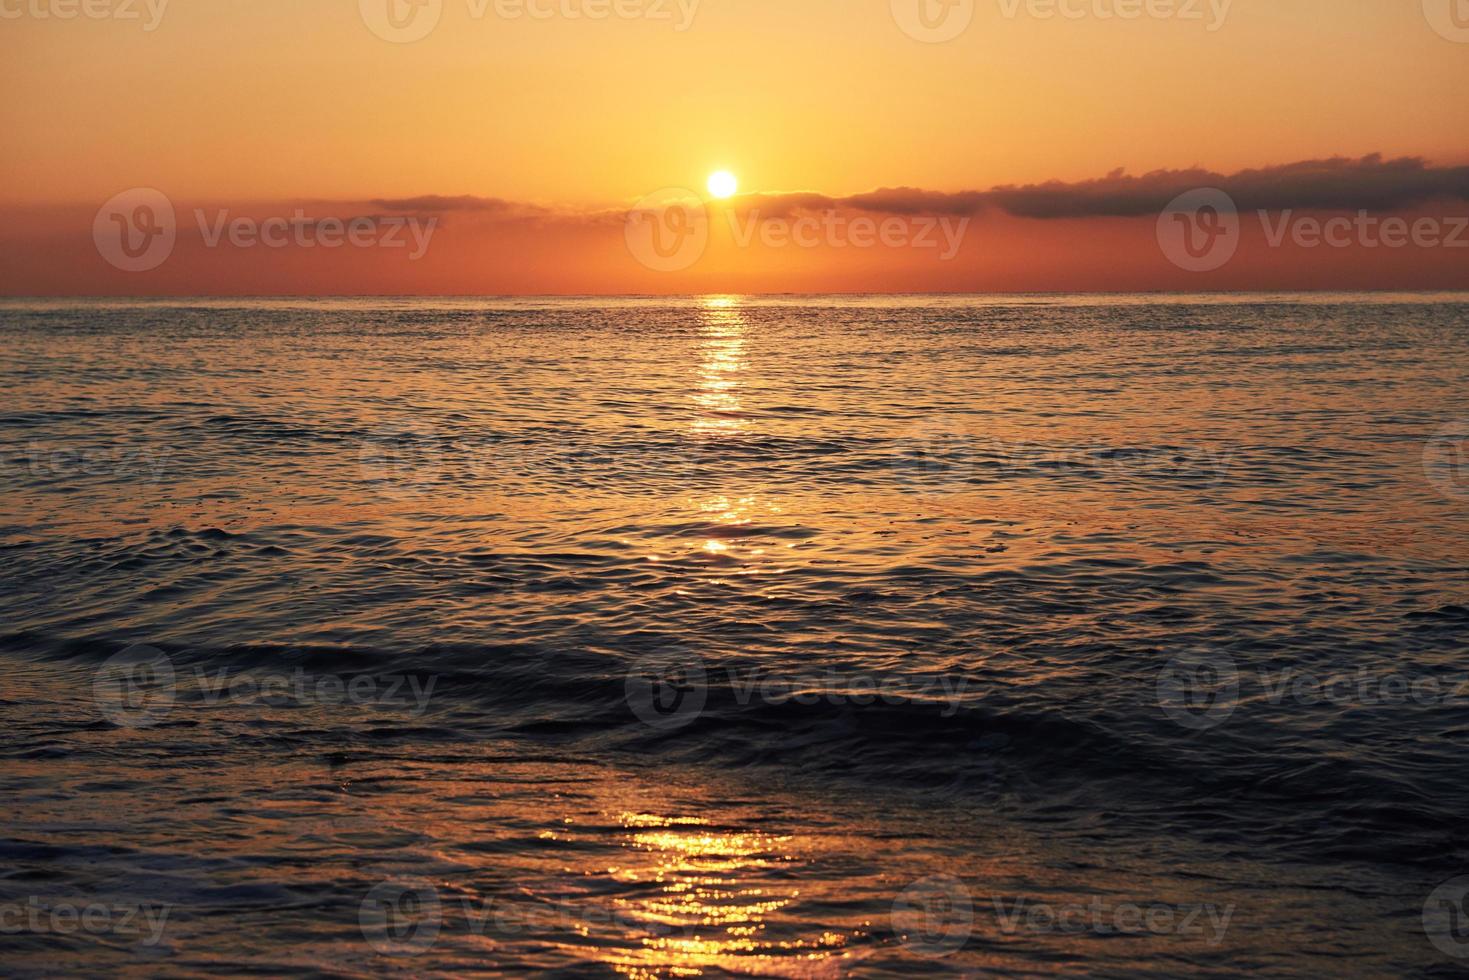 färgglad solnedgång över havet från kolliderande vågor. naturens sammansättning foto